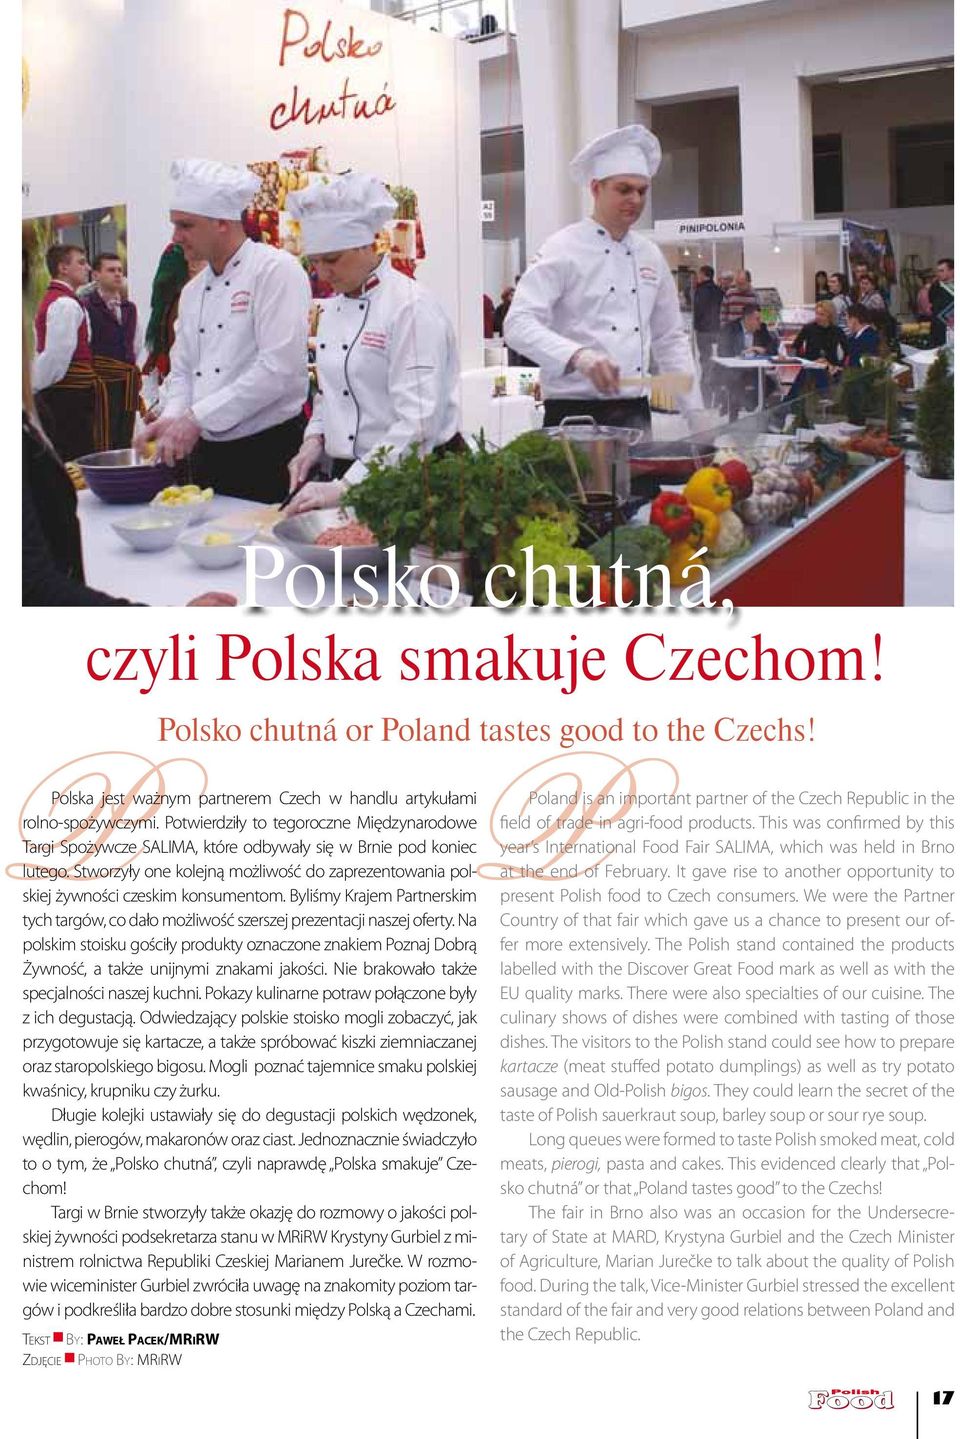 Stworzyły one kolejną możliwość do zaprezentowania polskiej żywności czeskim konsumentom. Byliśmy Krajem Partnerskim tych targów, co dało możliwość szerszej prezentacji naszej oferty.